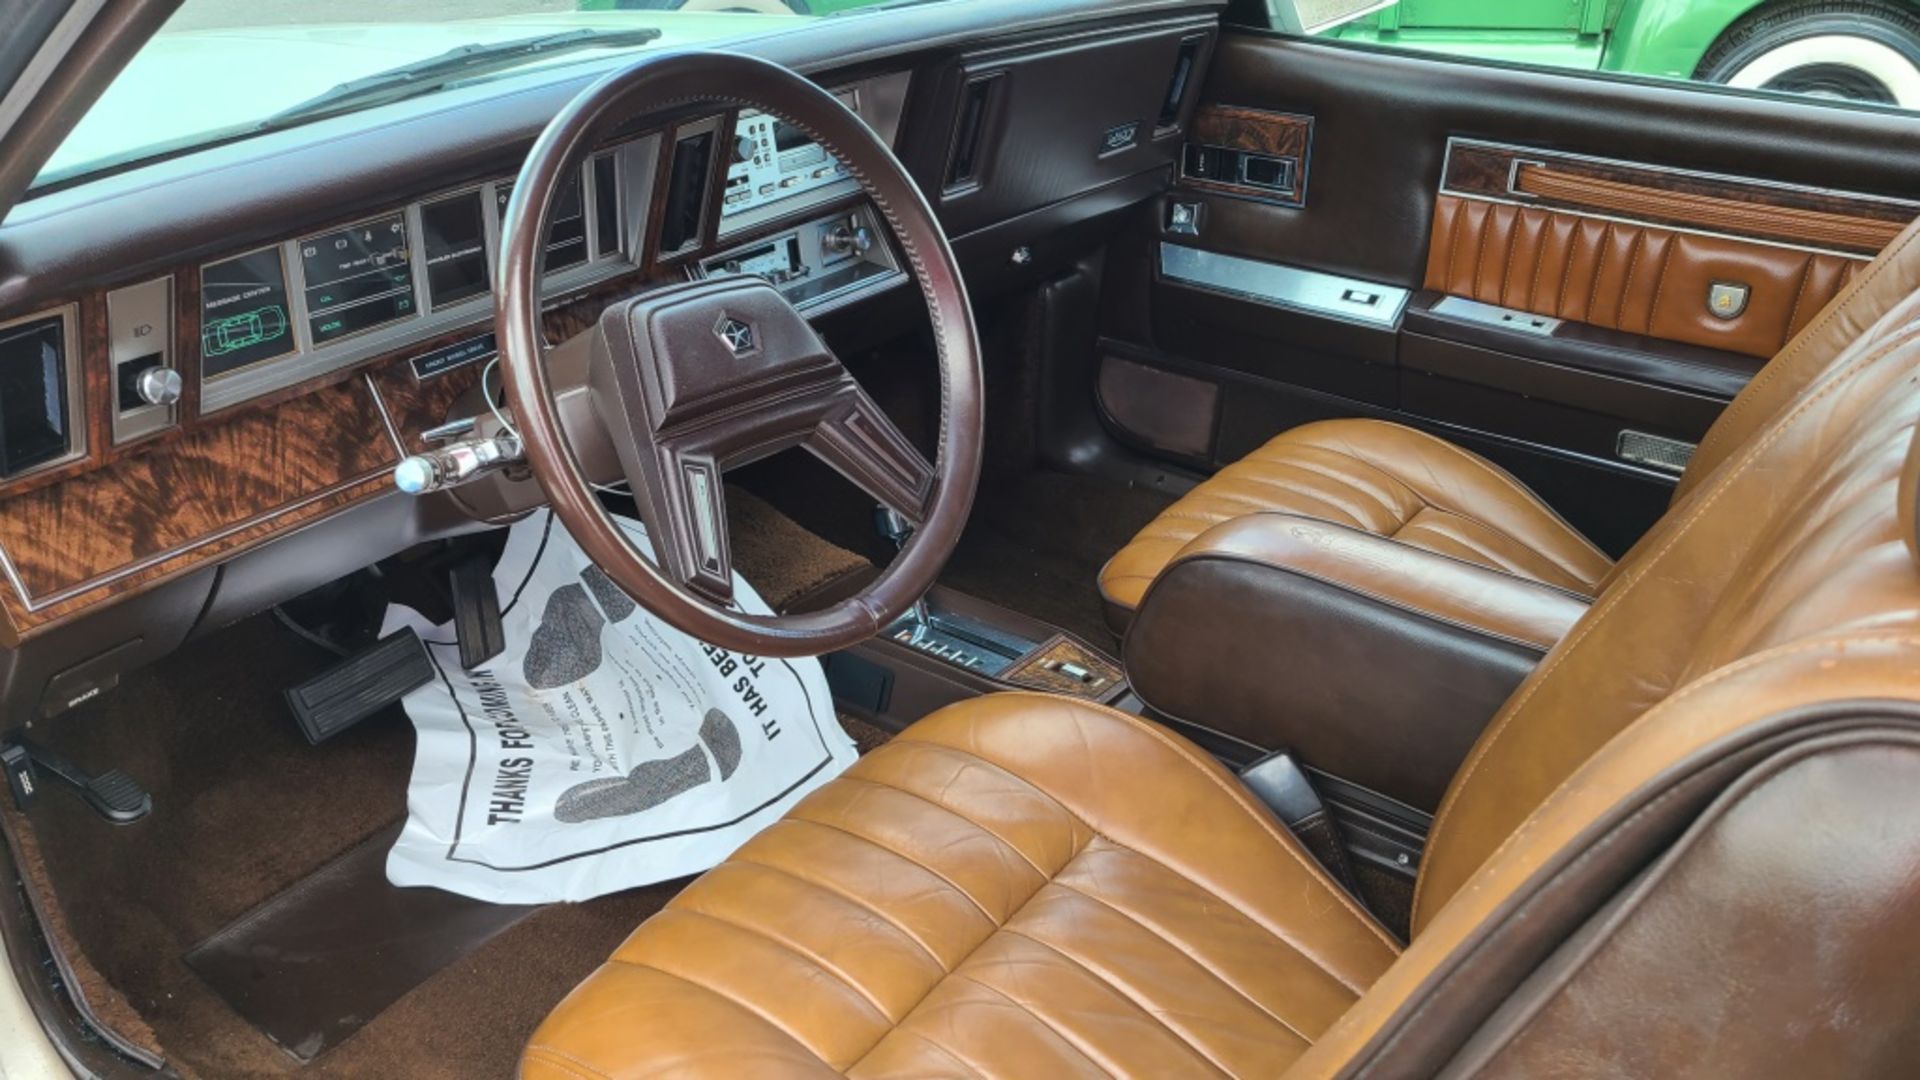 1984 Chrysler Lebaron Convertible - Image 7 of 12